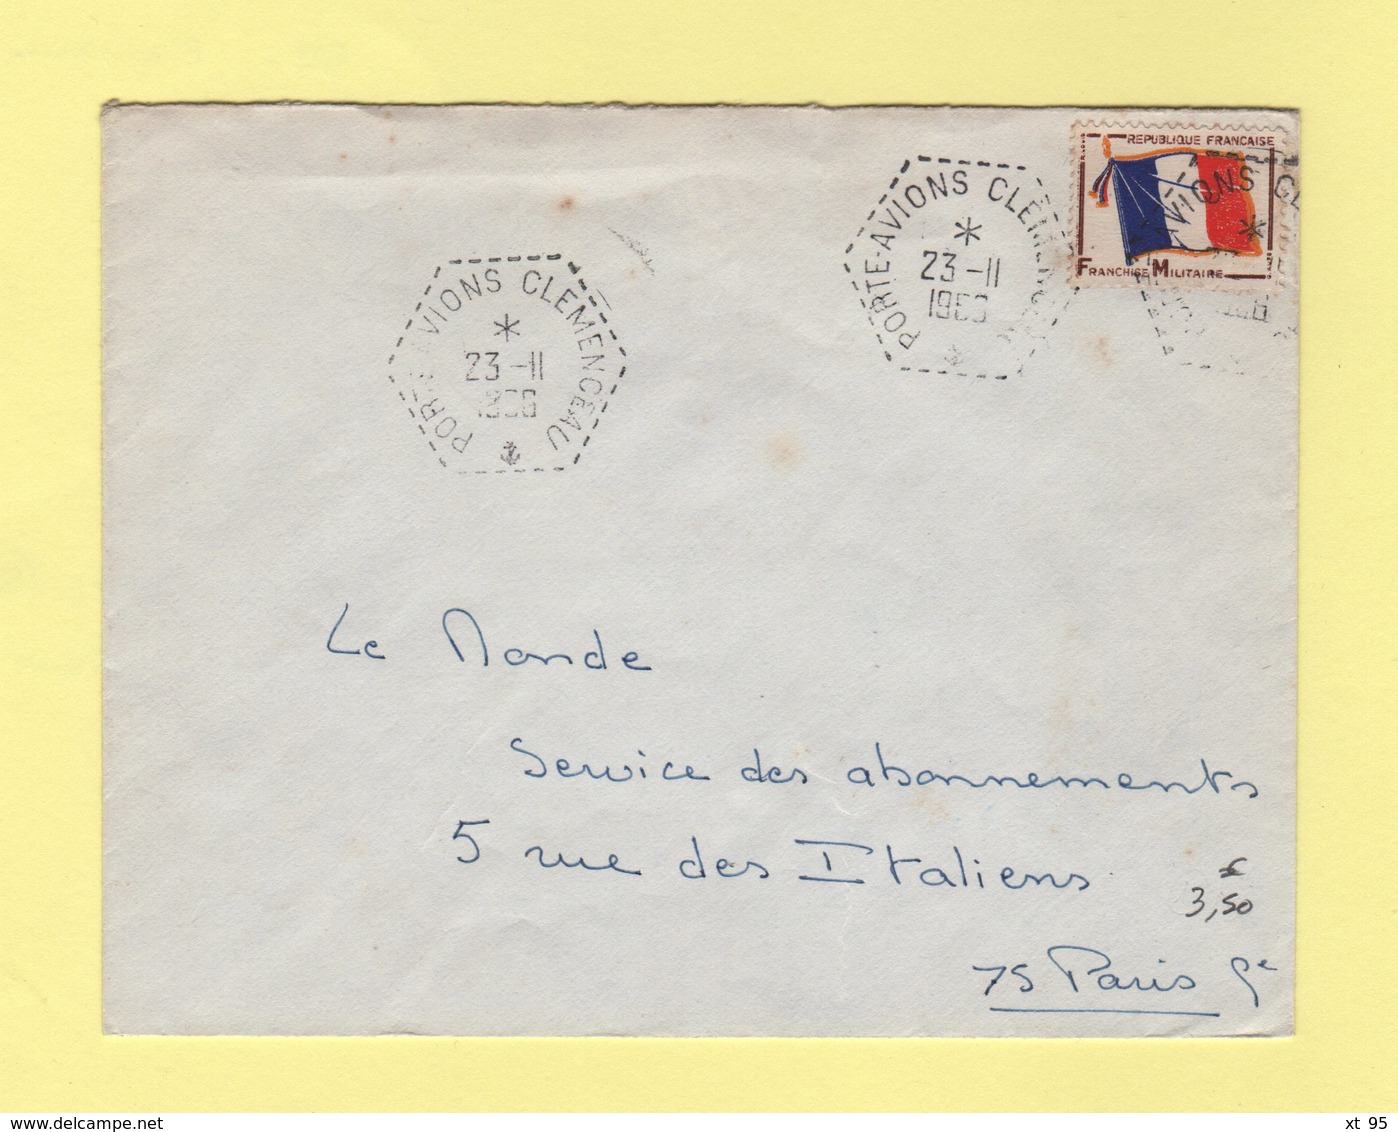 Poste Navale - Porte Avion Clemenceau - 23-11-1966 - Timbre FM - Scheepspost